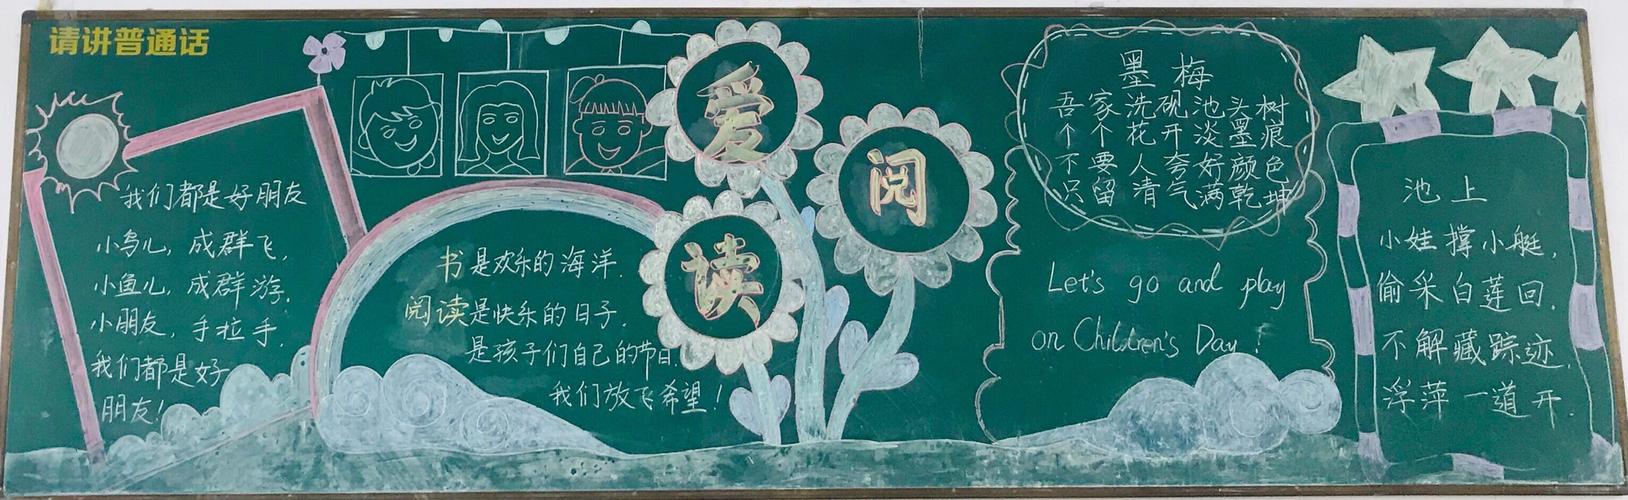 共建书香泗洪黑板报评选活动 写美篇 为了营造浓郁的校园读书氛围